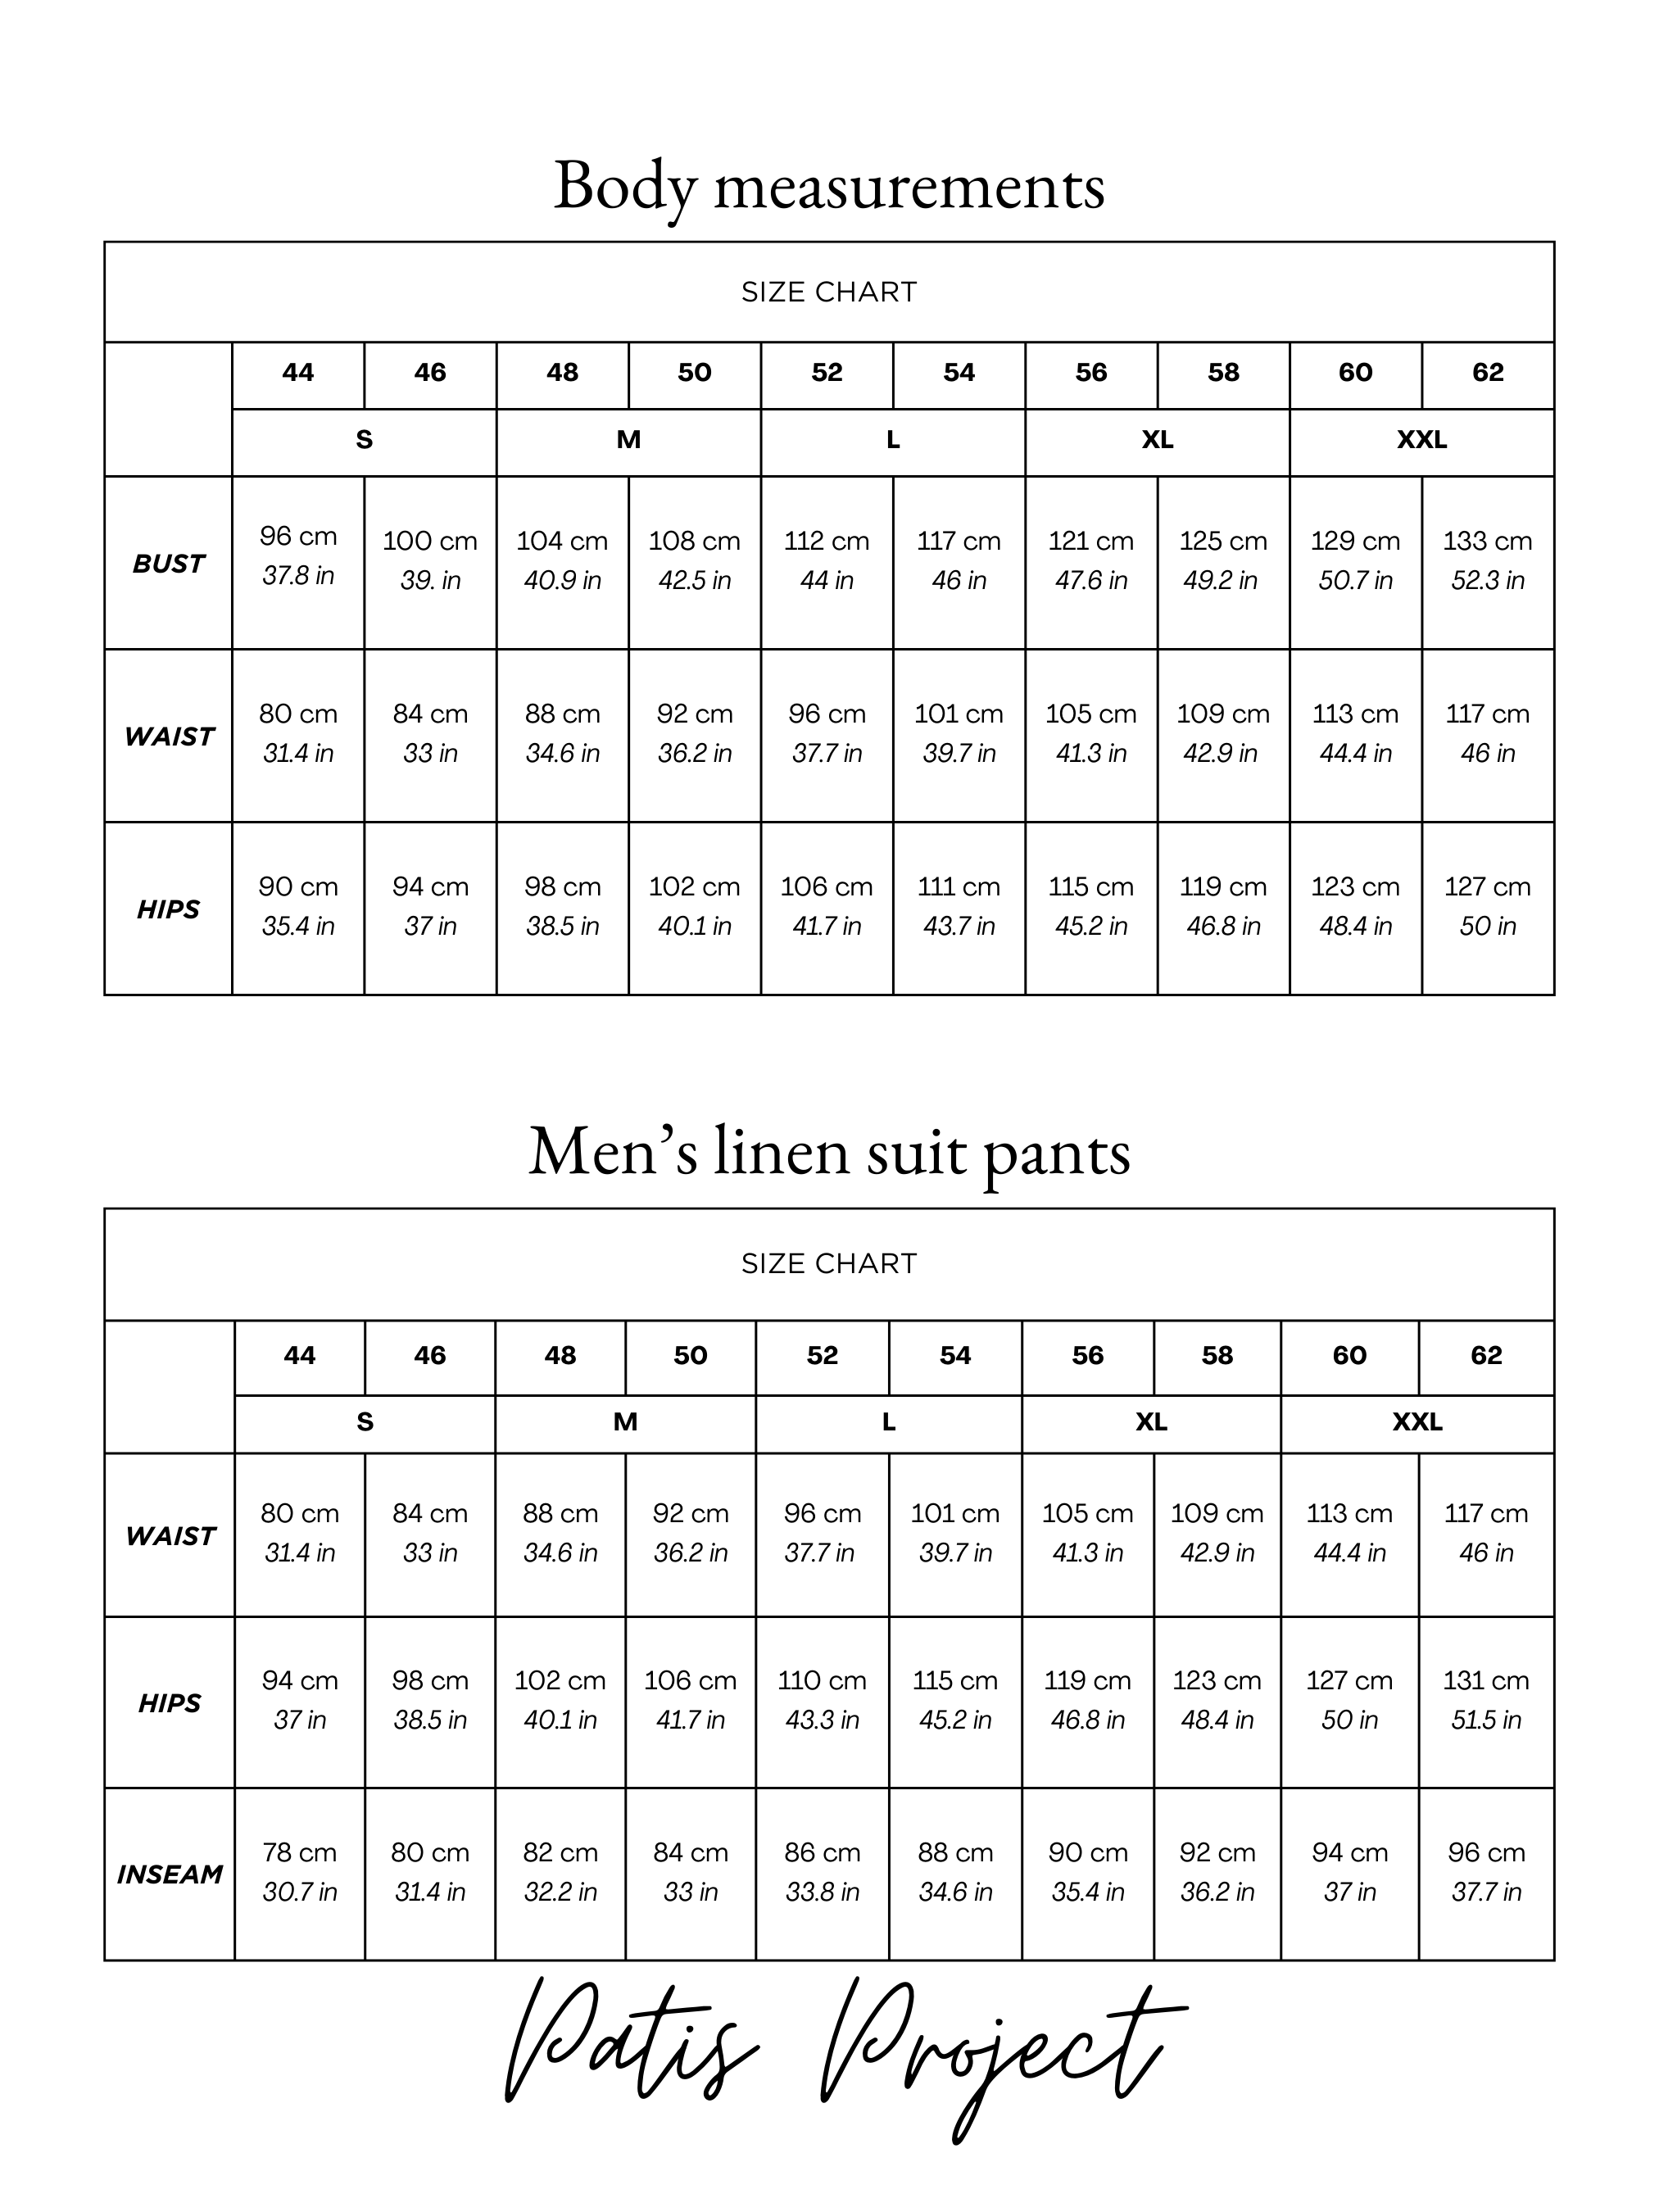 Men's linen suit pants